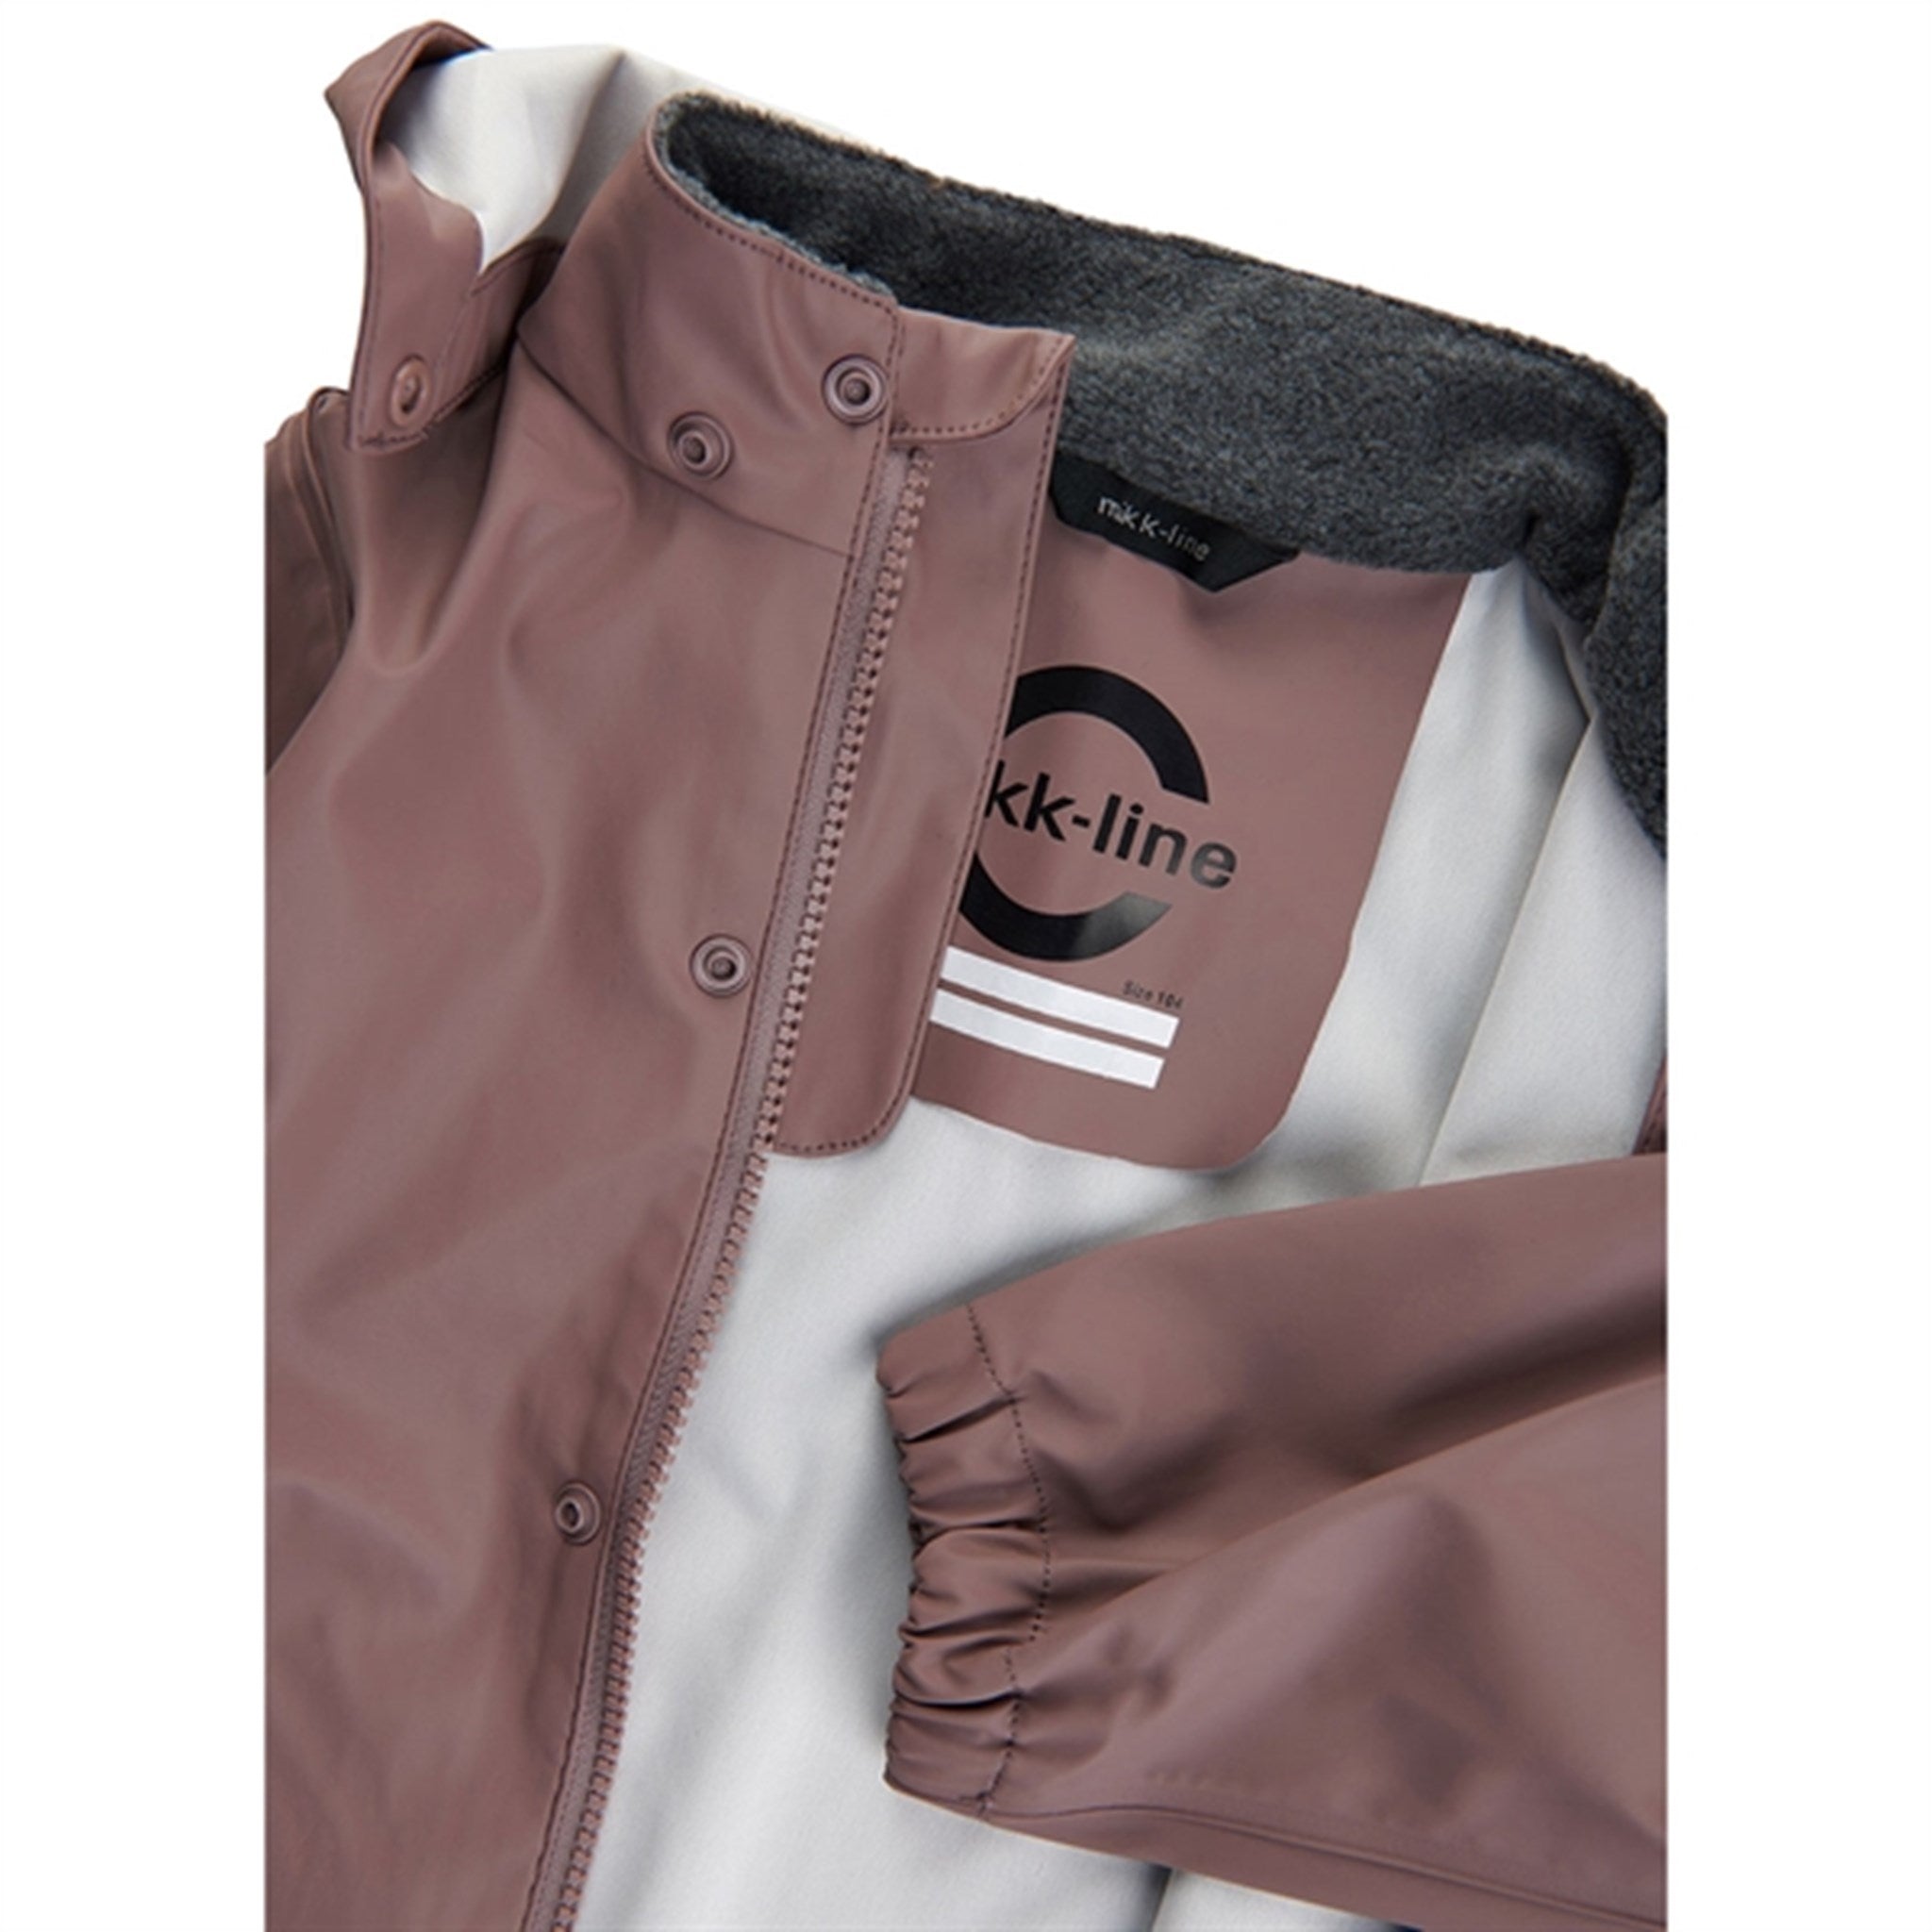 Mikk-Line Rainwear Jacket And Pants Burlwood 3